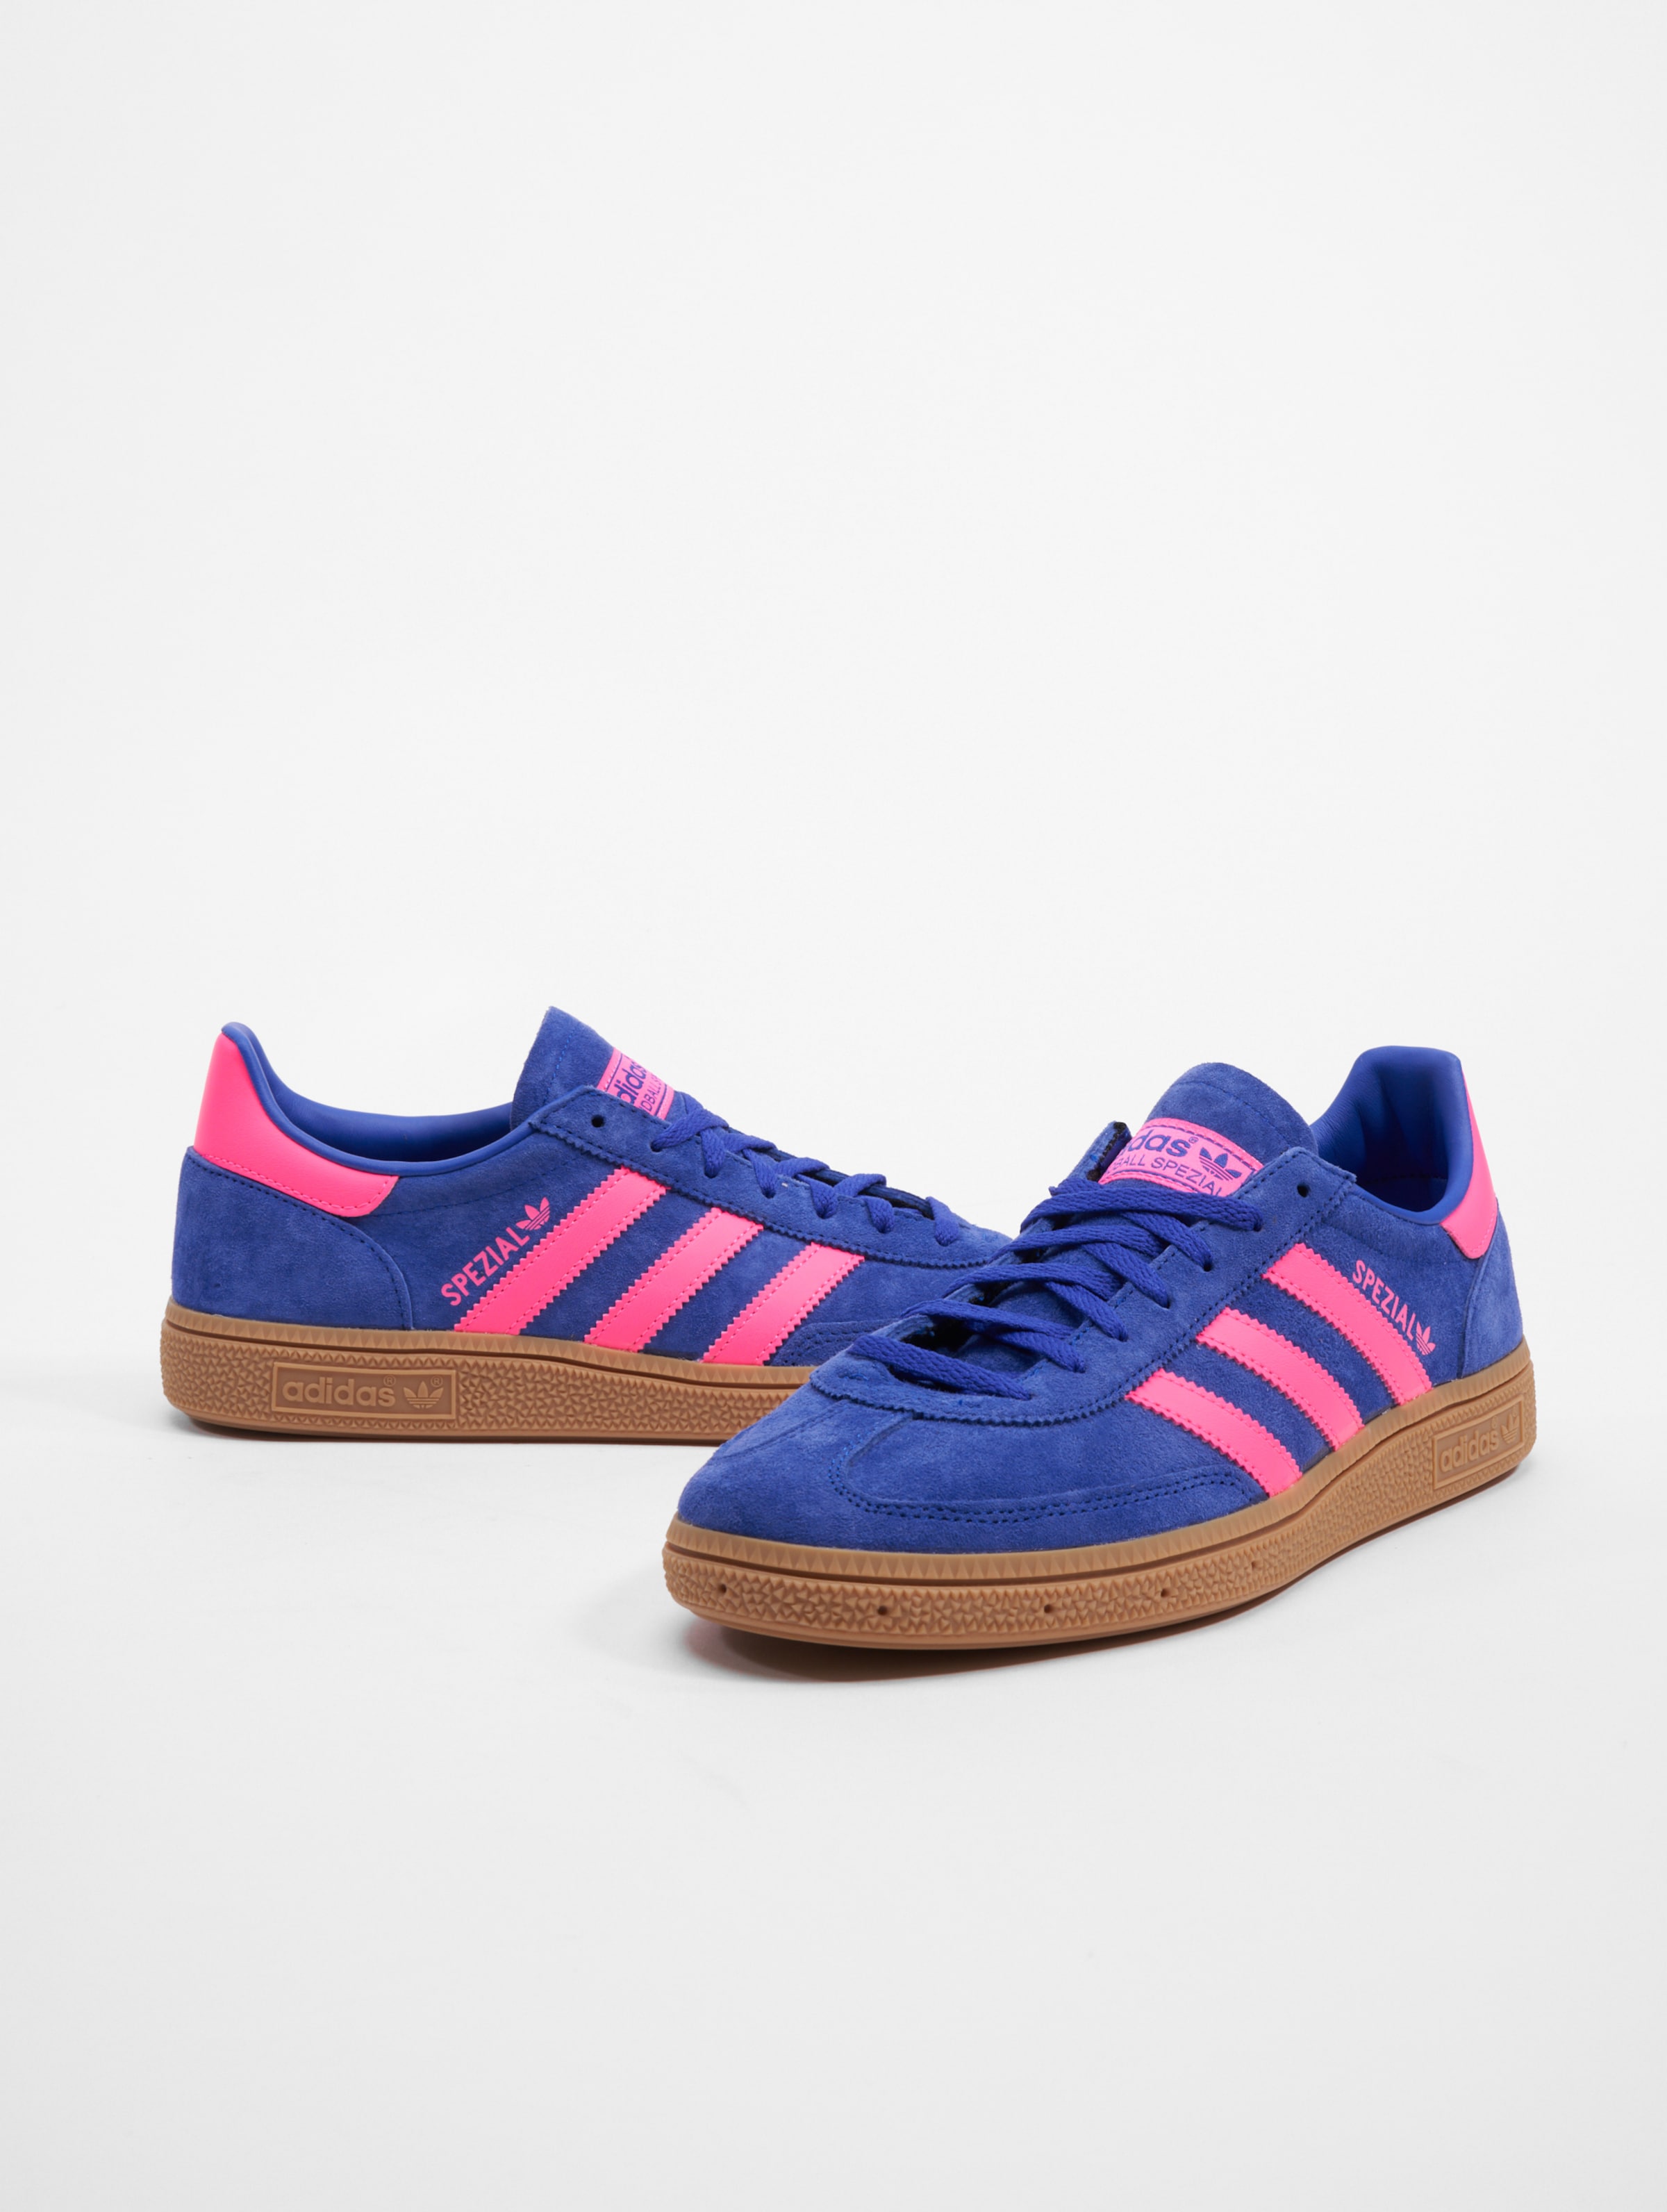 adidas Originals Handball Spezial Sneakers Frauen,Männer,Unisex op kleur blauw, Maat 41 1/3